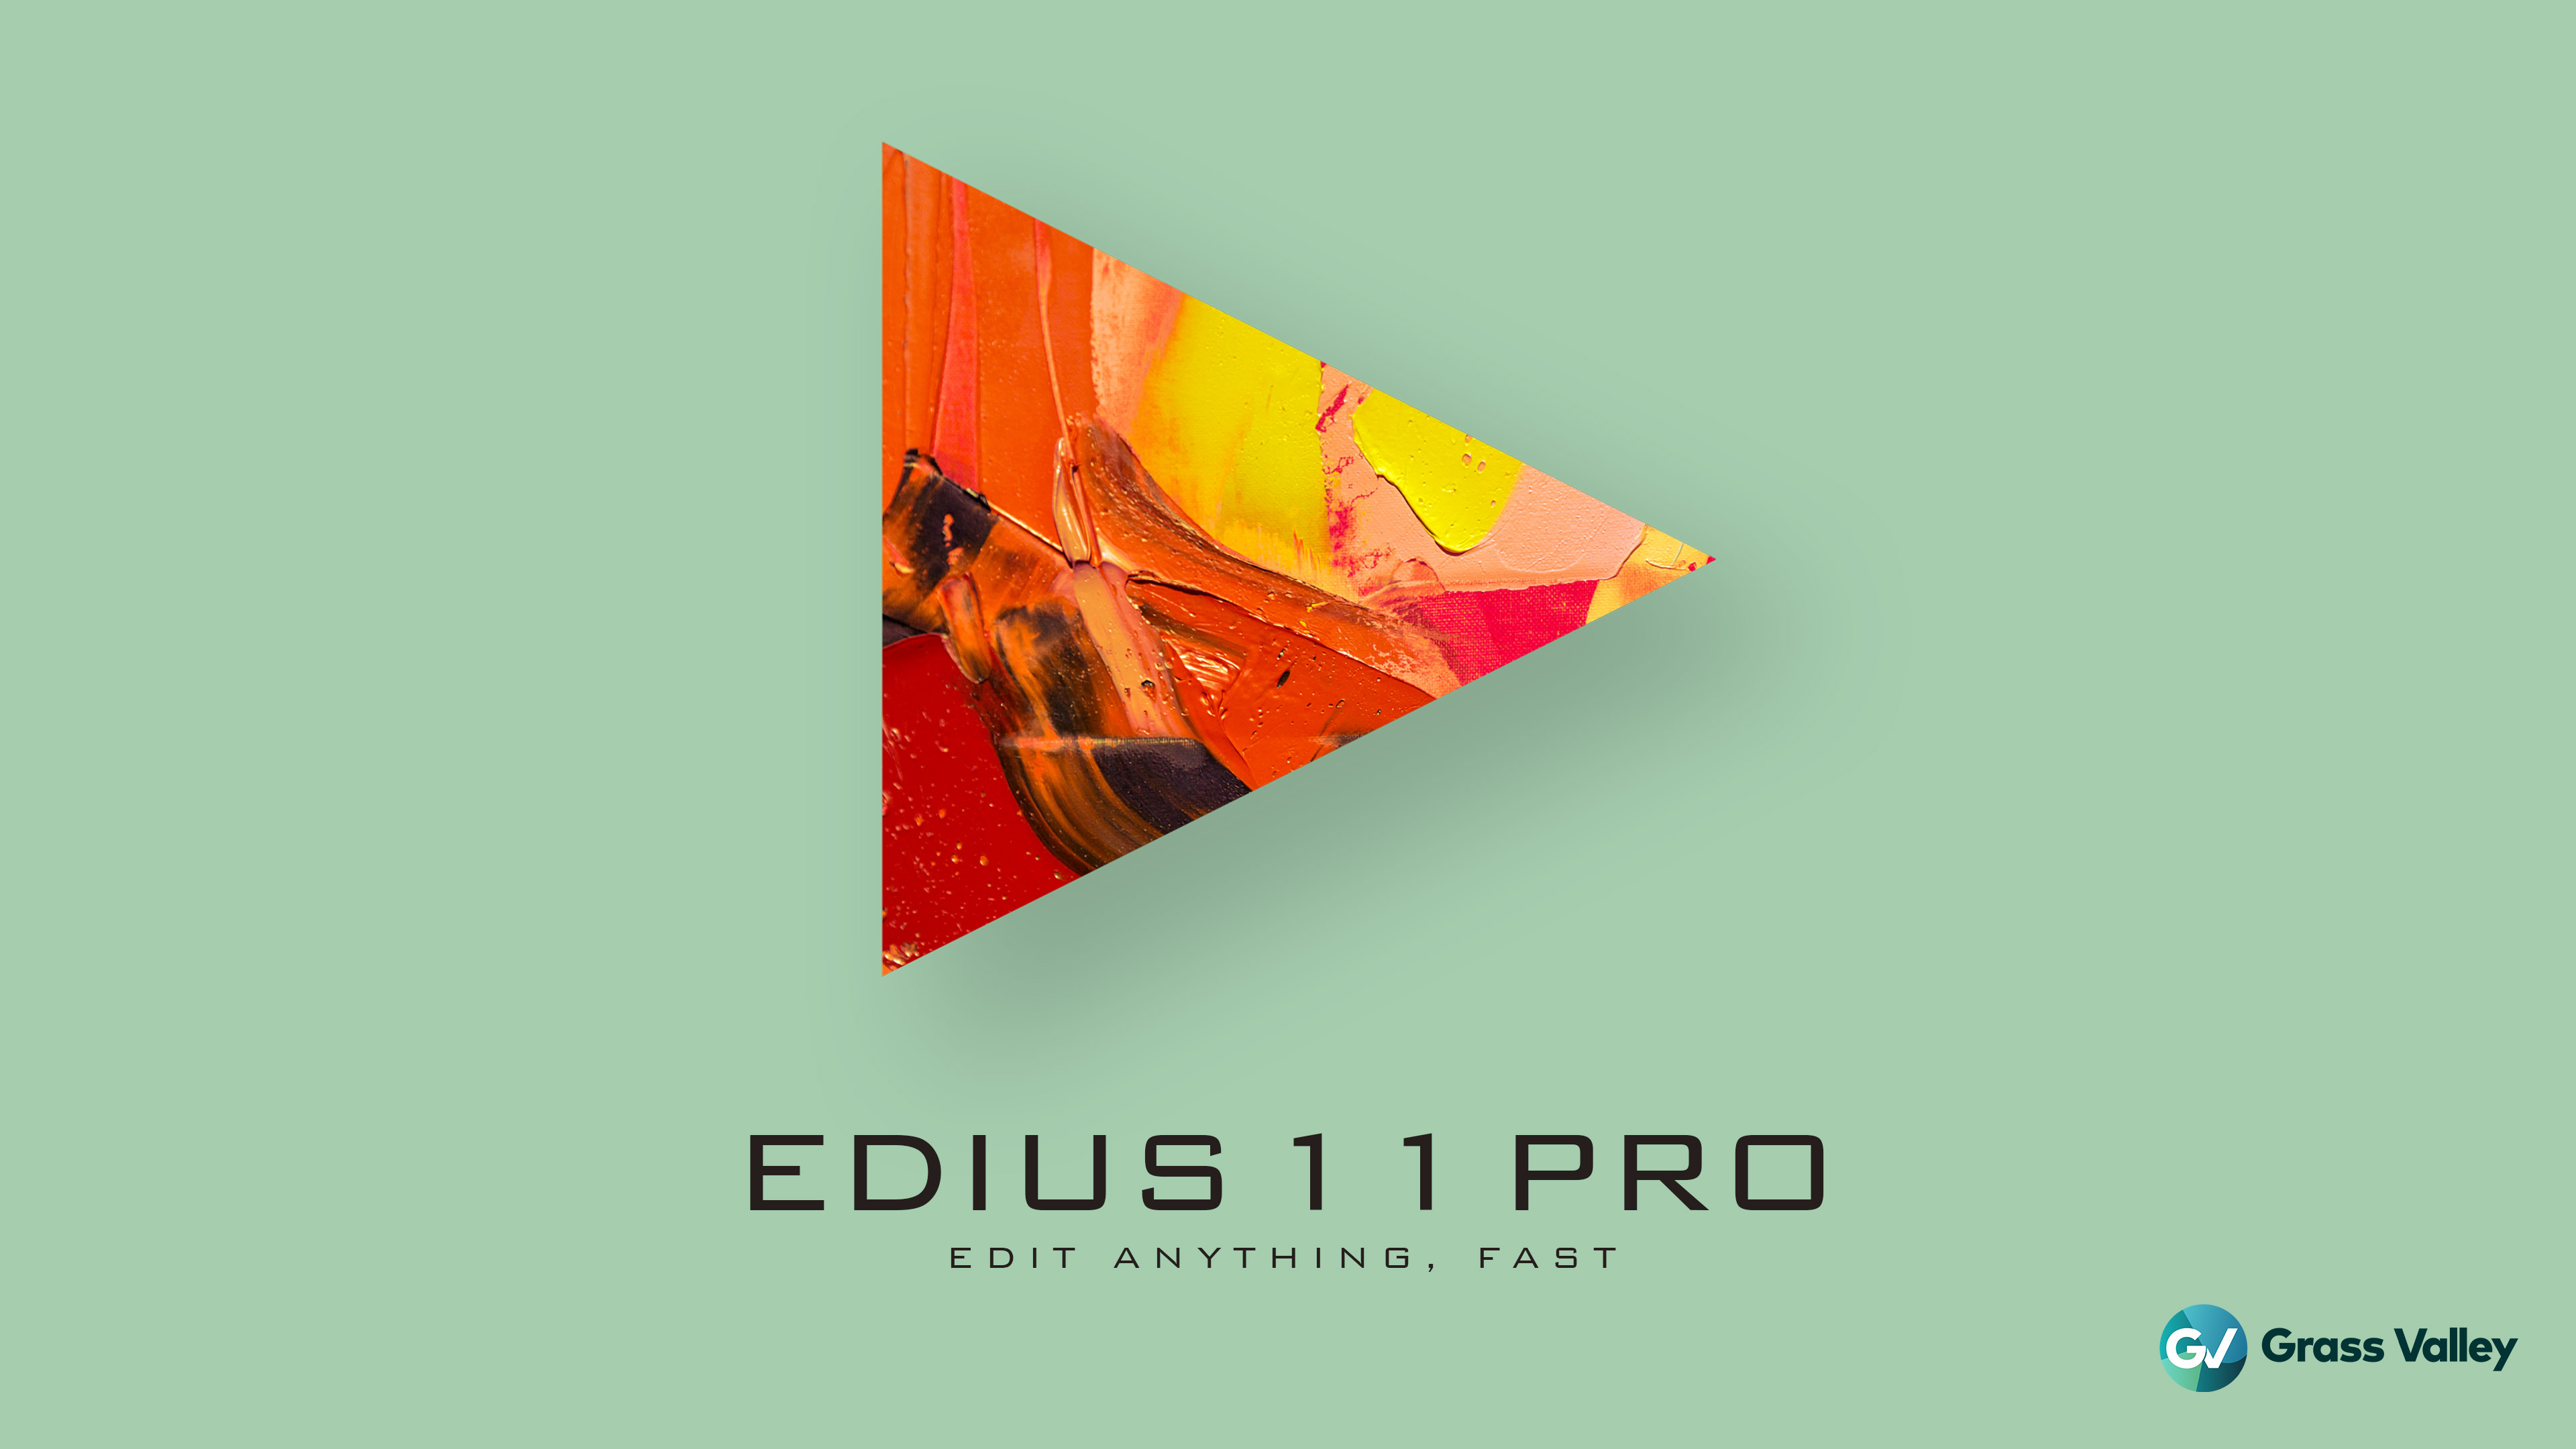 Edius 11 Pro